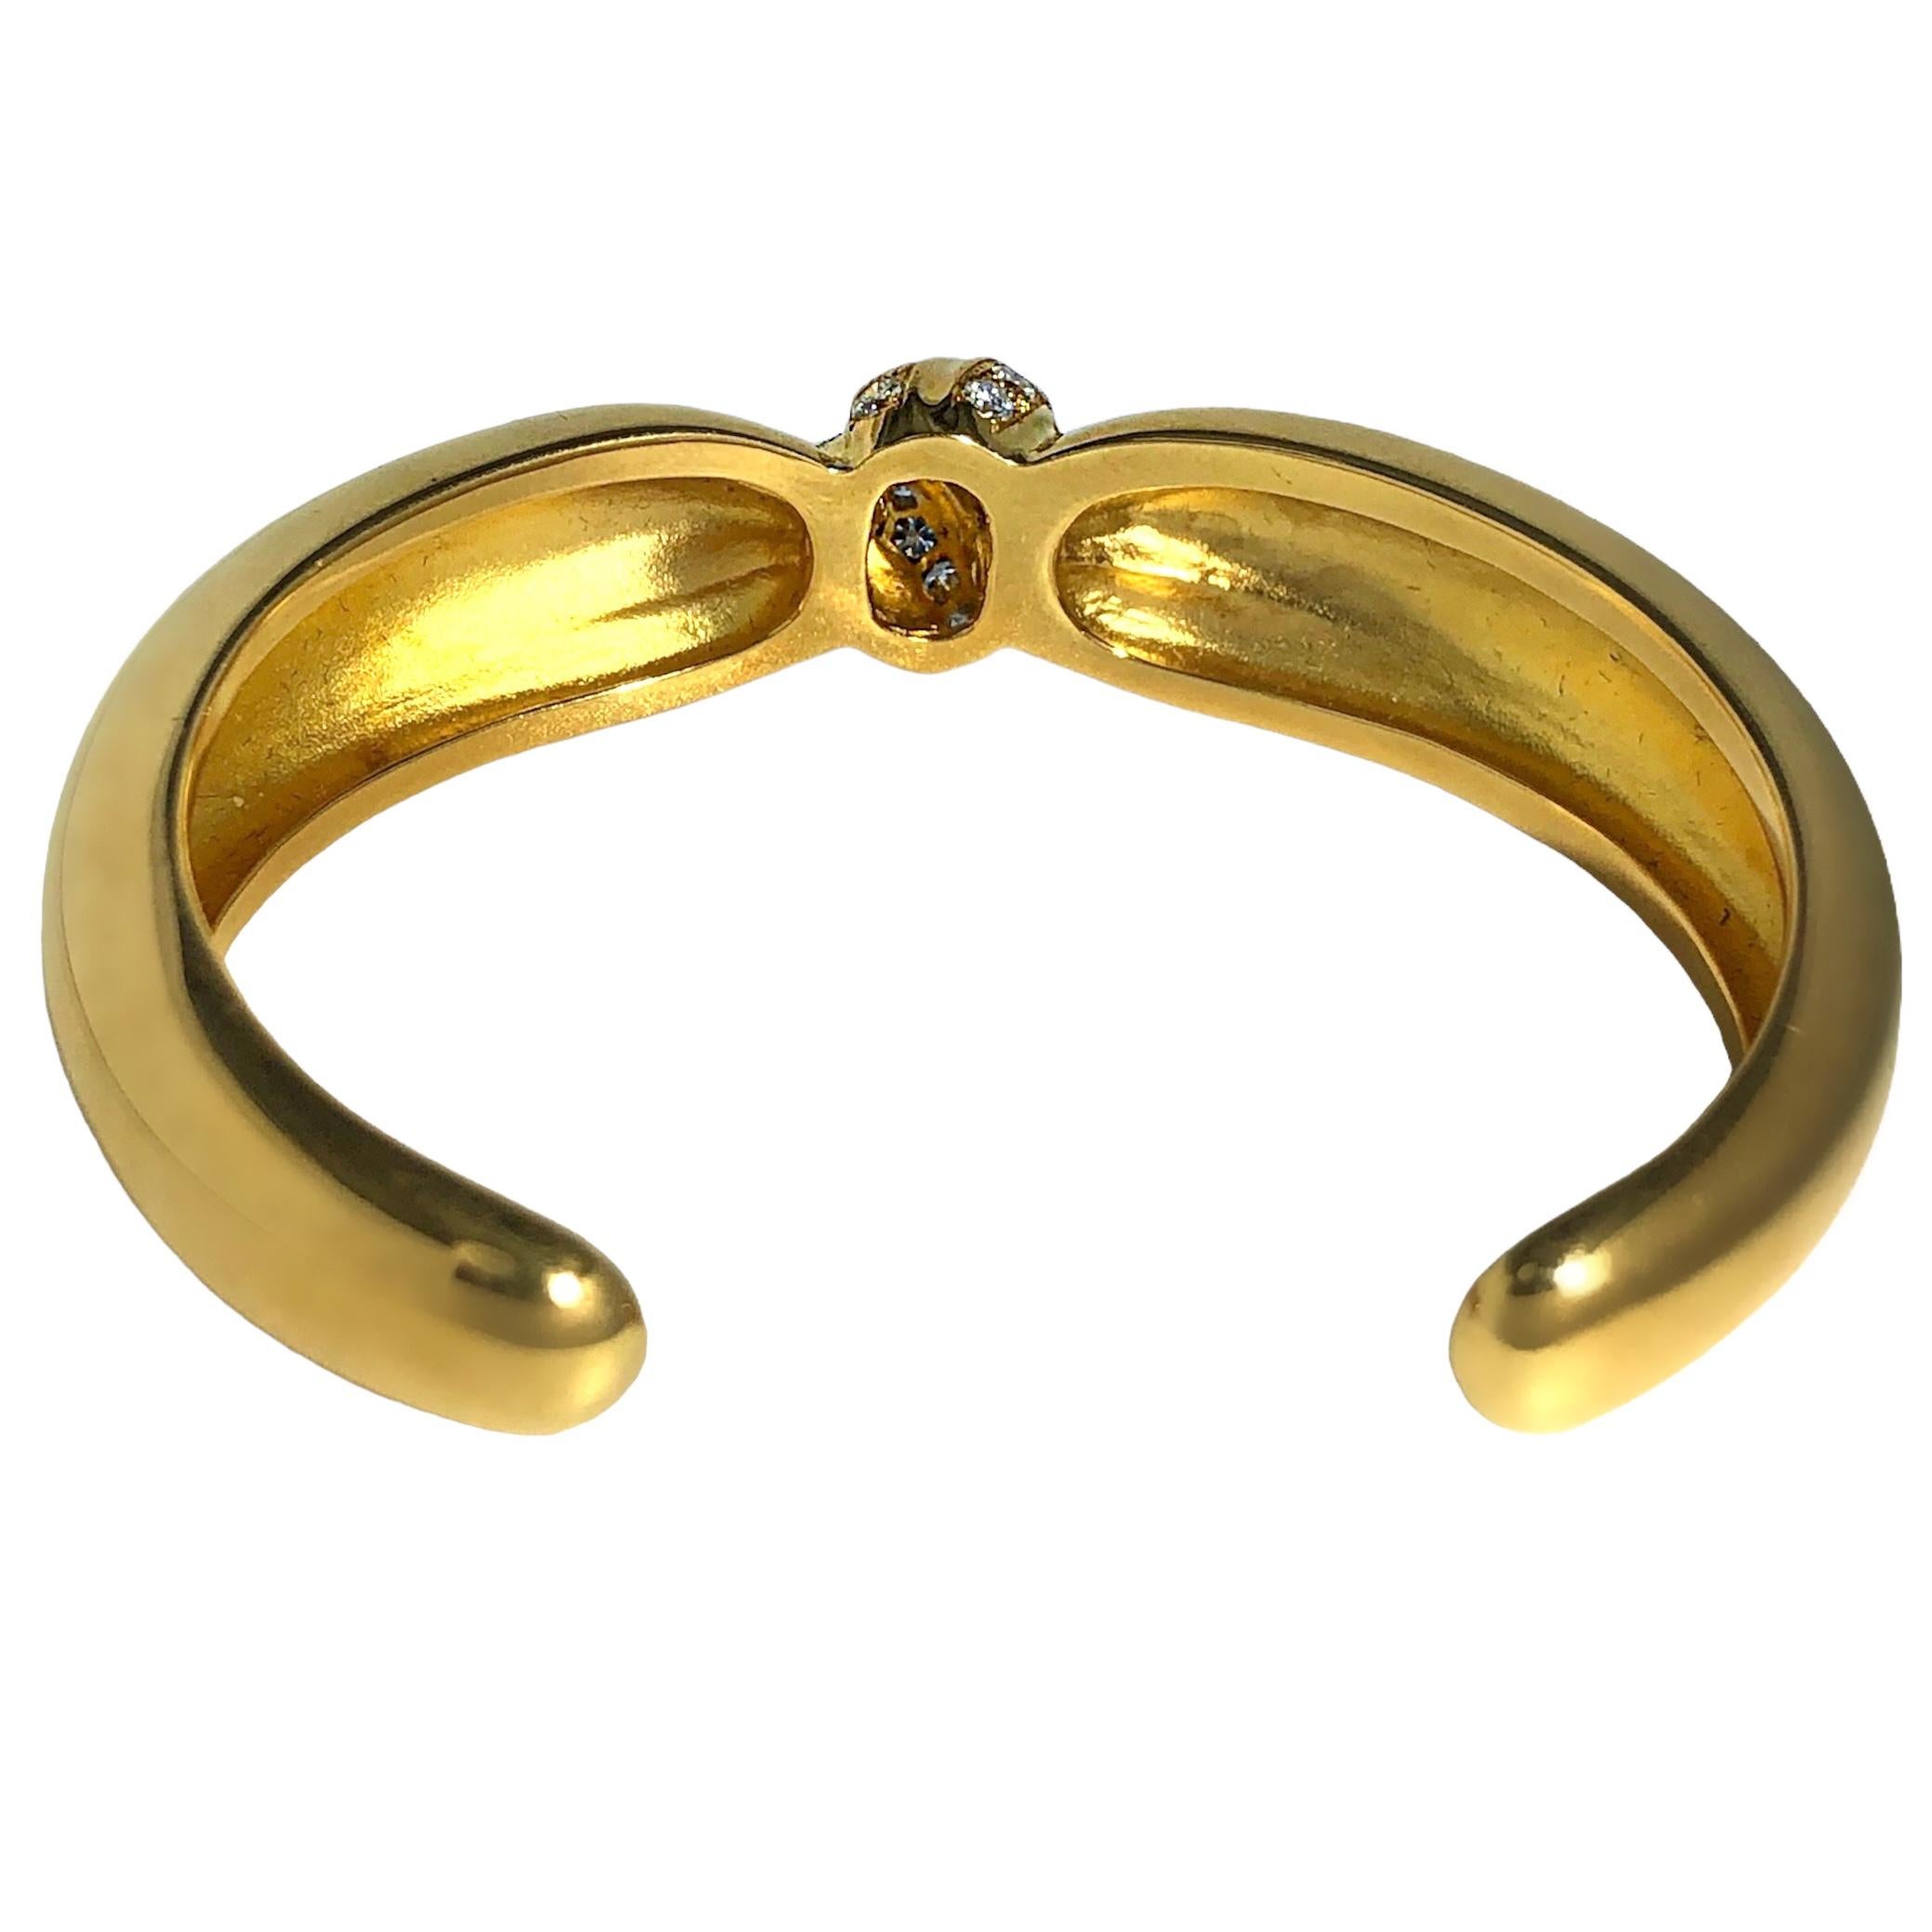 Taille brillant Van Cleef and Arpels, bracelet jonc torsadé en or jaune 18 carats et diamants